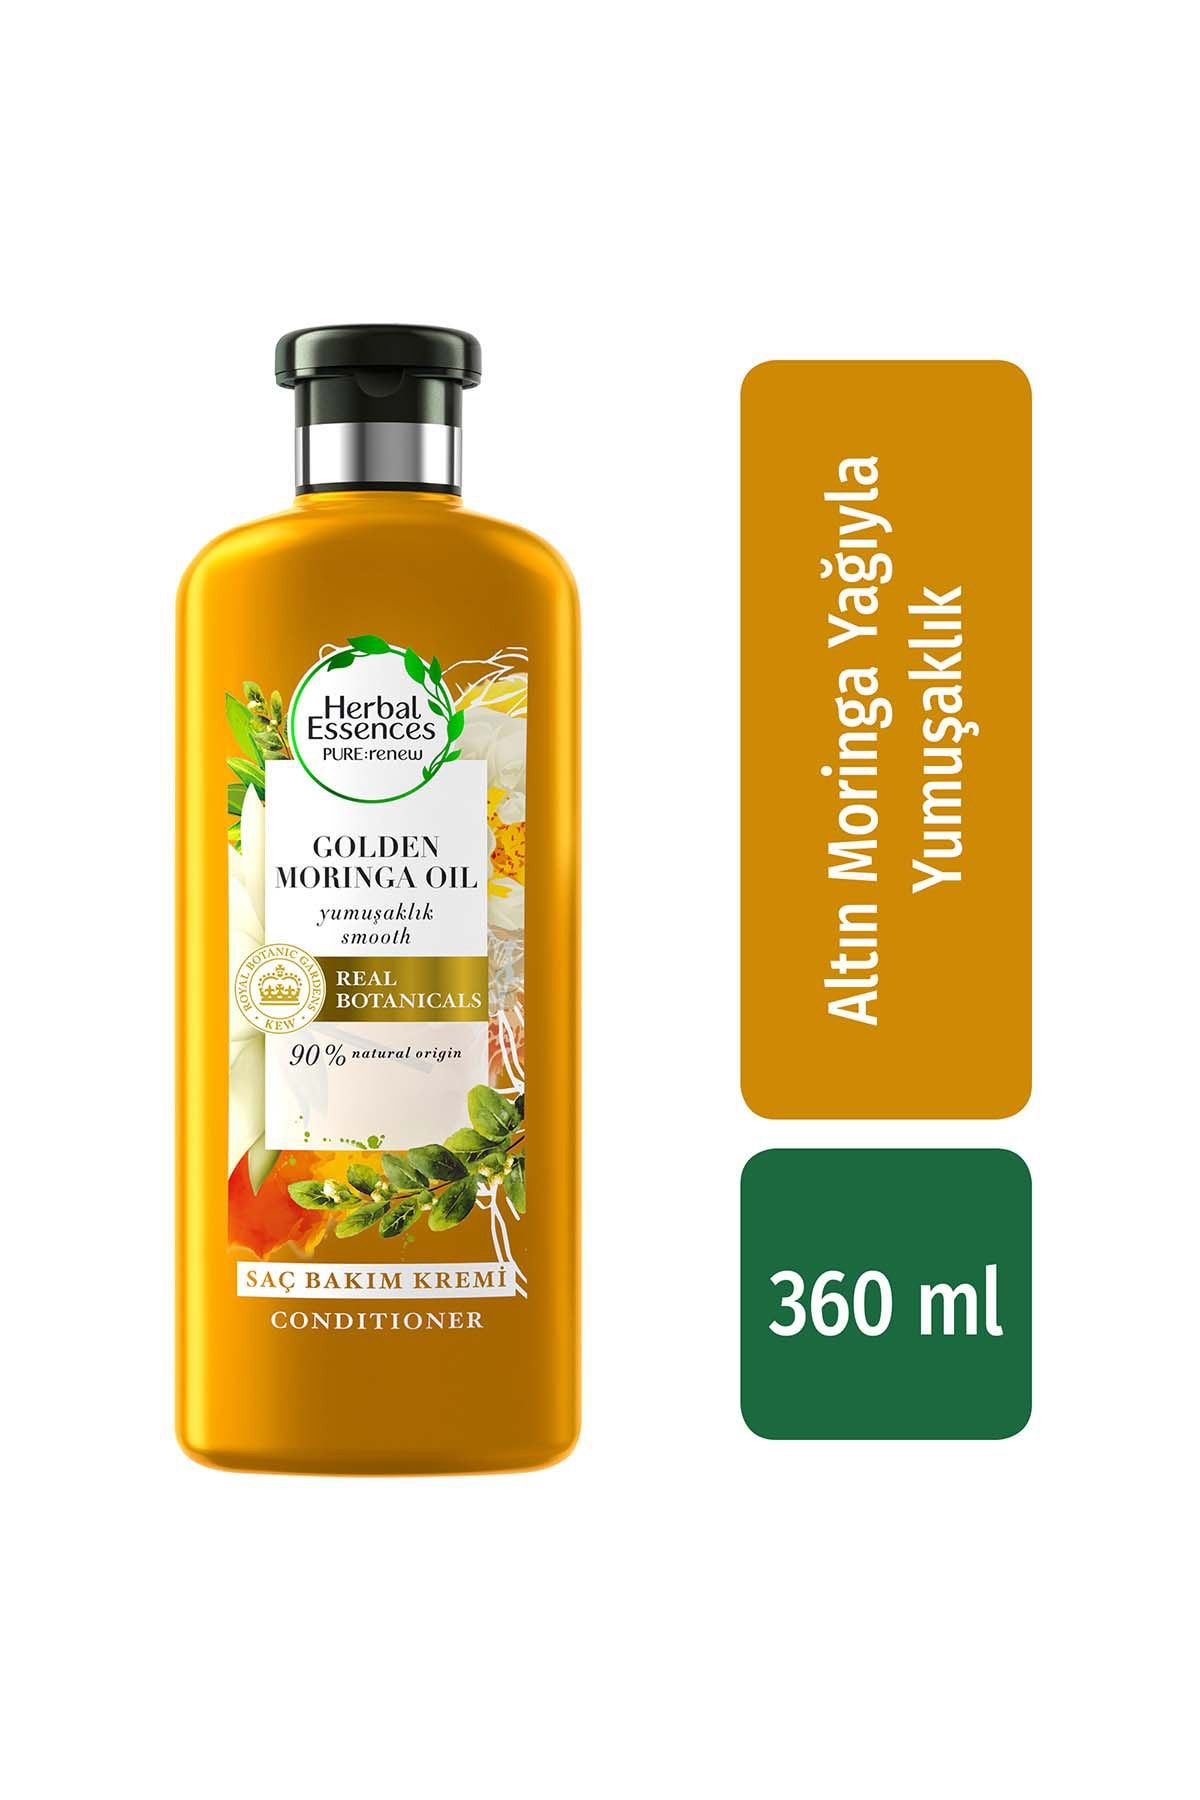 Herbal Essences Ikra Saç Bakım Kremi Yumuşaklık Altın Moringa Yağı 360 Ml